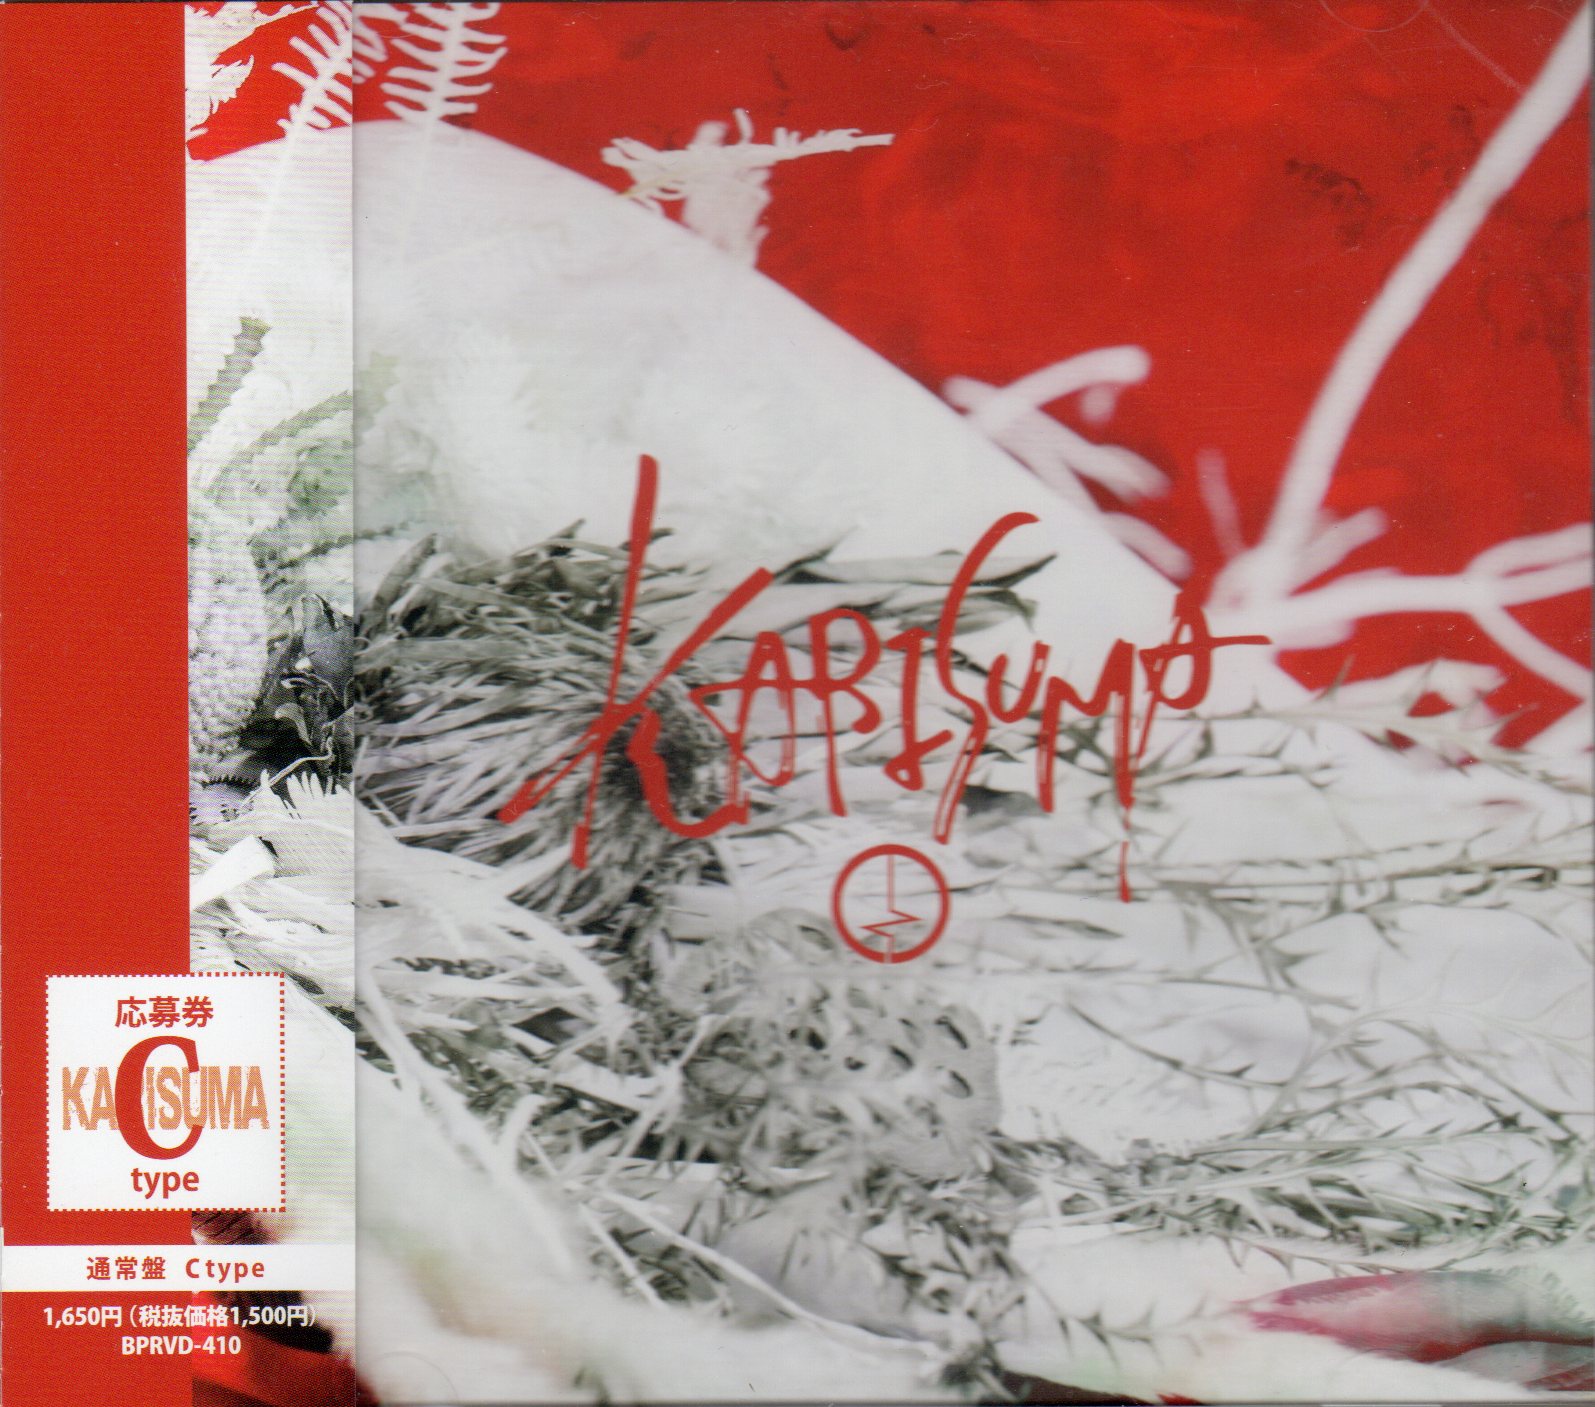 コドモドラゴン の CD 【Ctype】KARISUMA